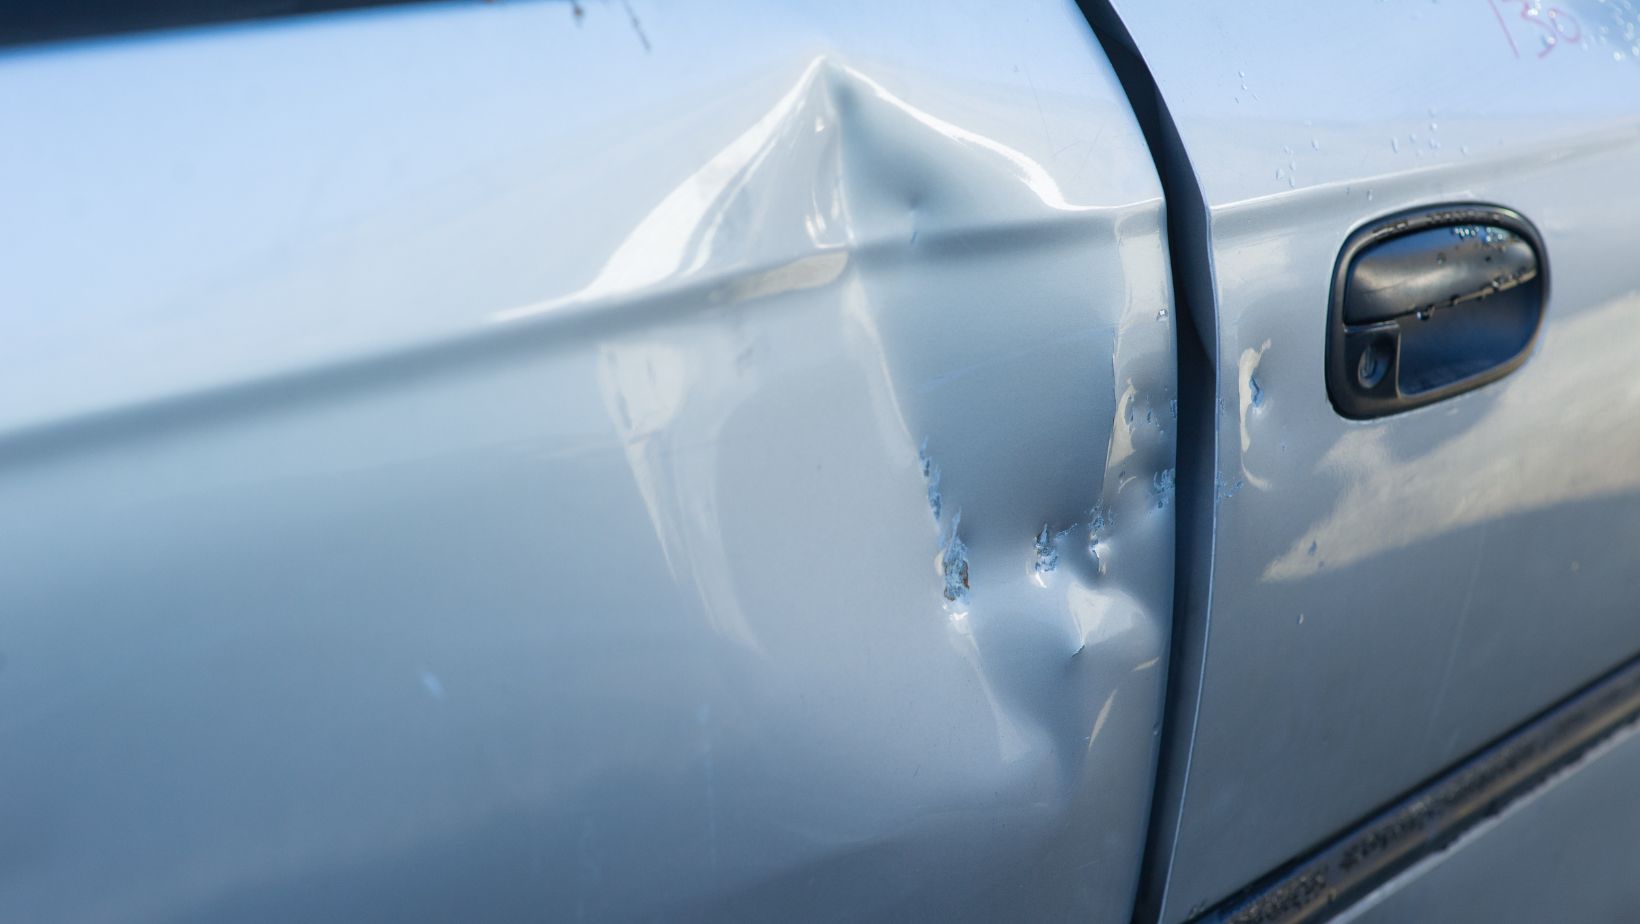 car door damage repair or replace